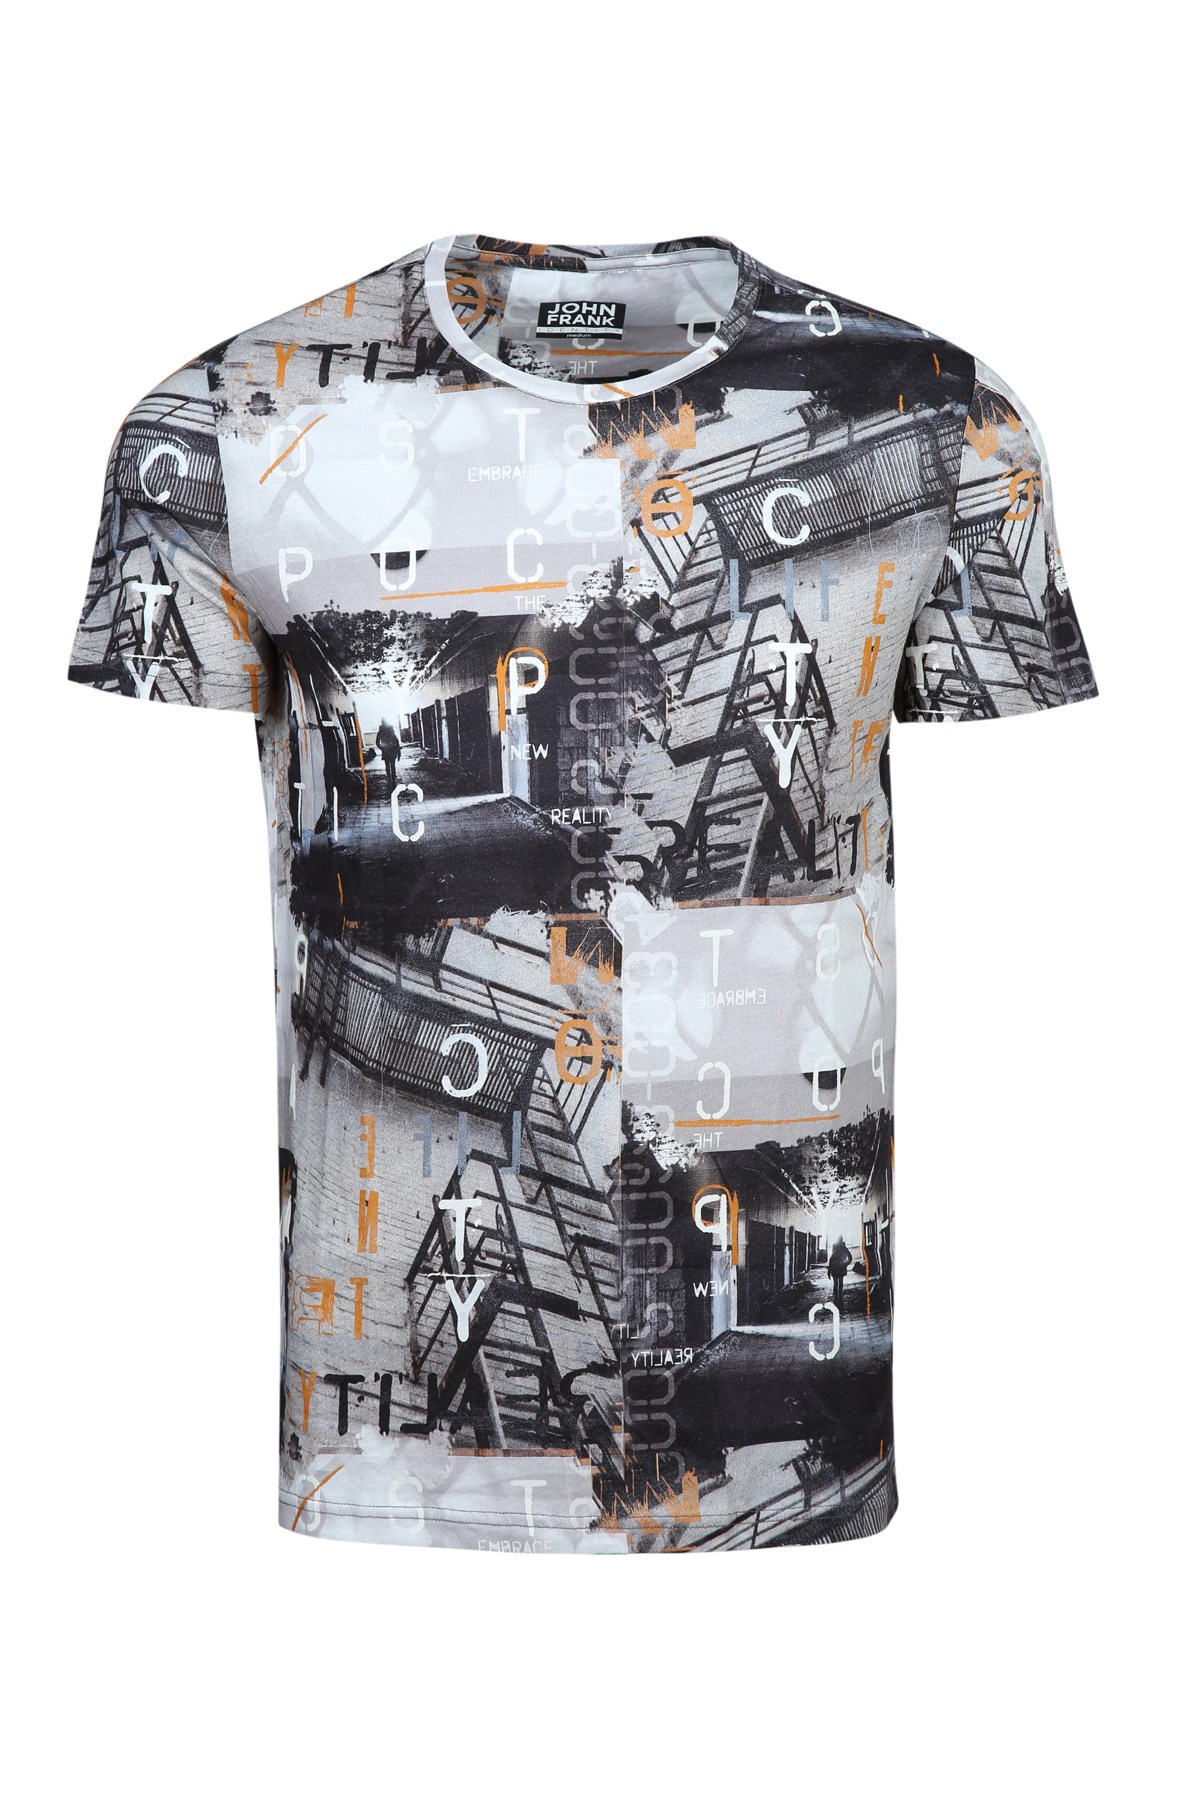 Erkek Dijital Baskılı T-Shirt |JOHN FRANK Baskılı Tişört Modelleri